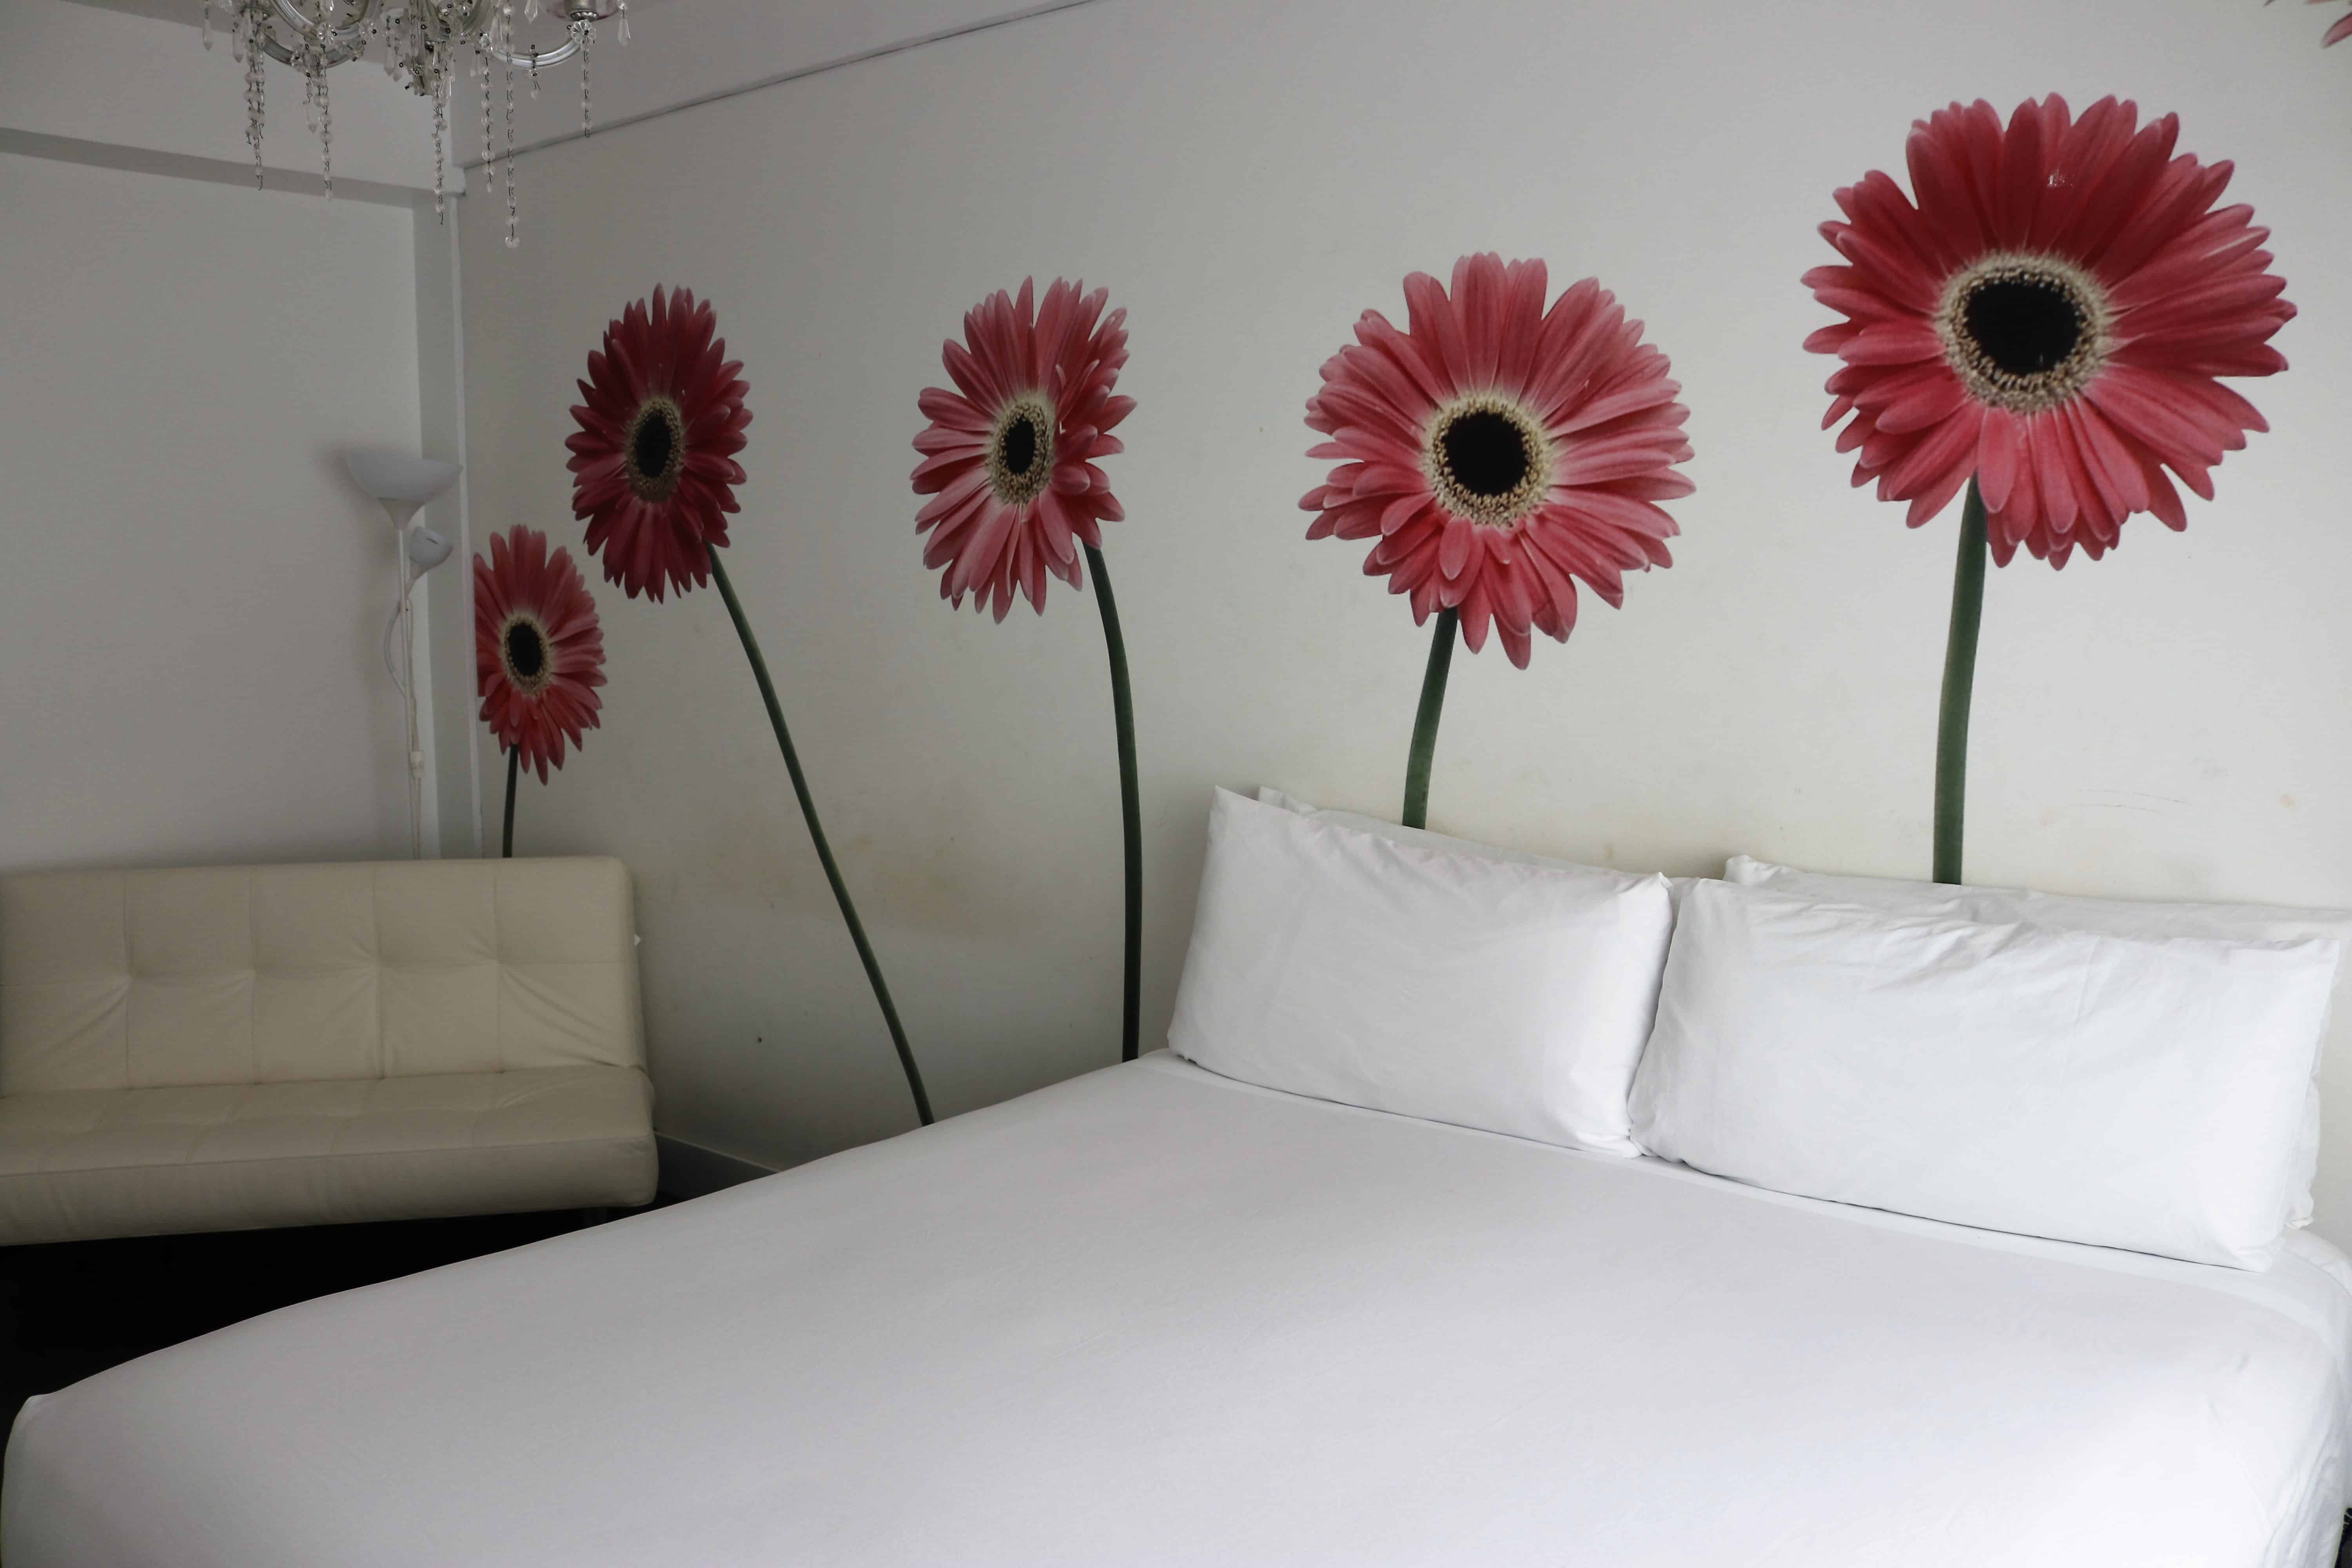 Penquin Hotel Room